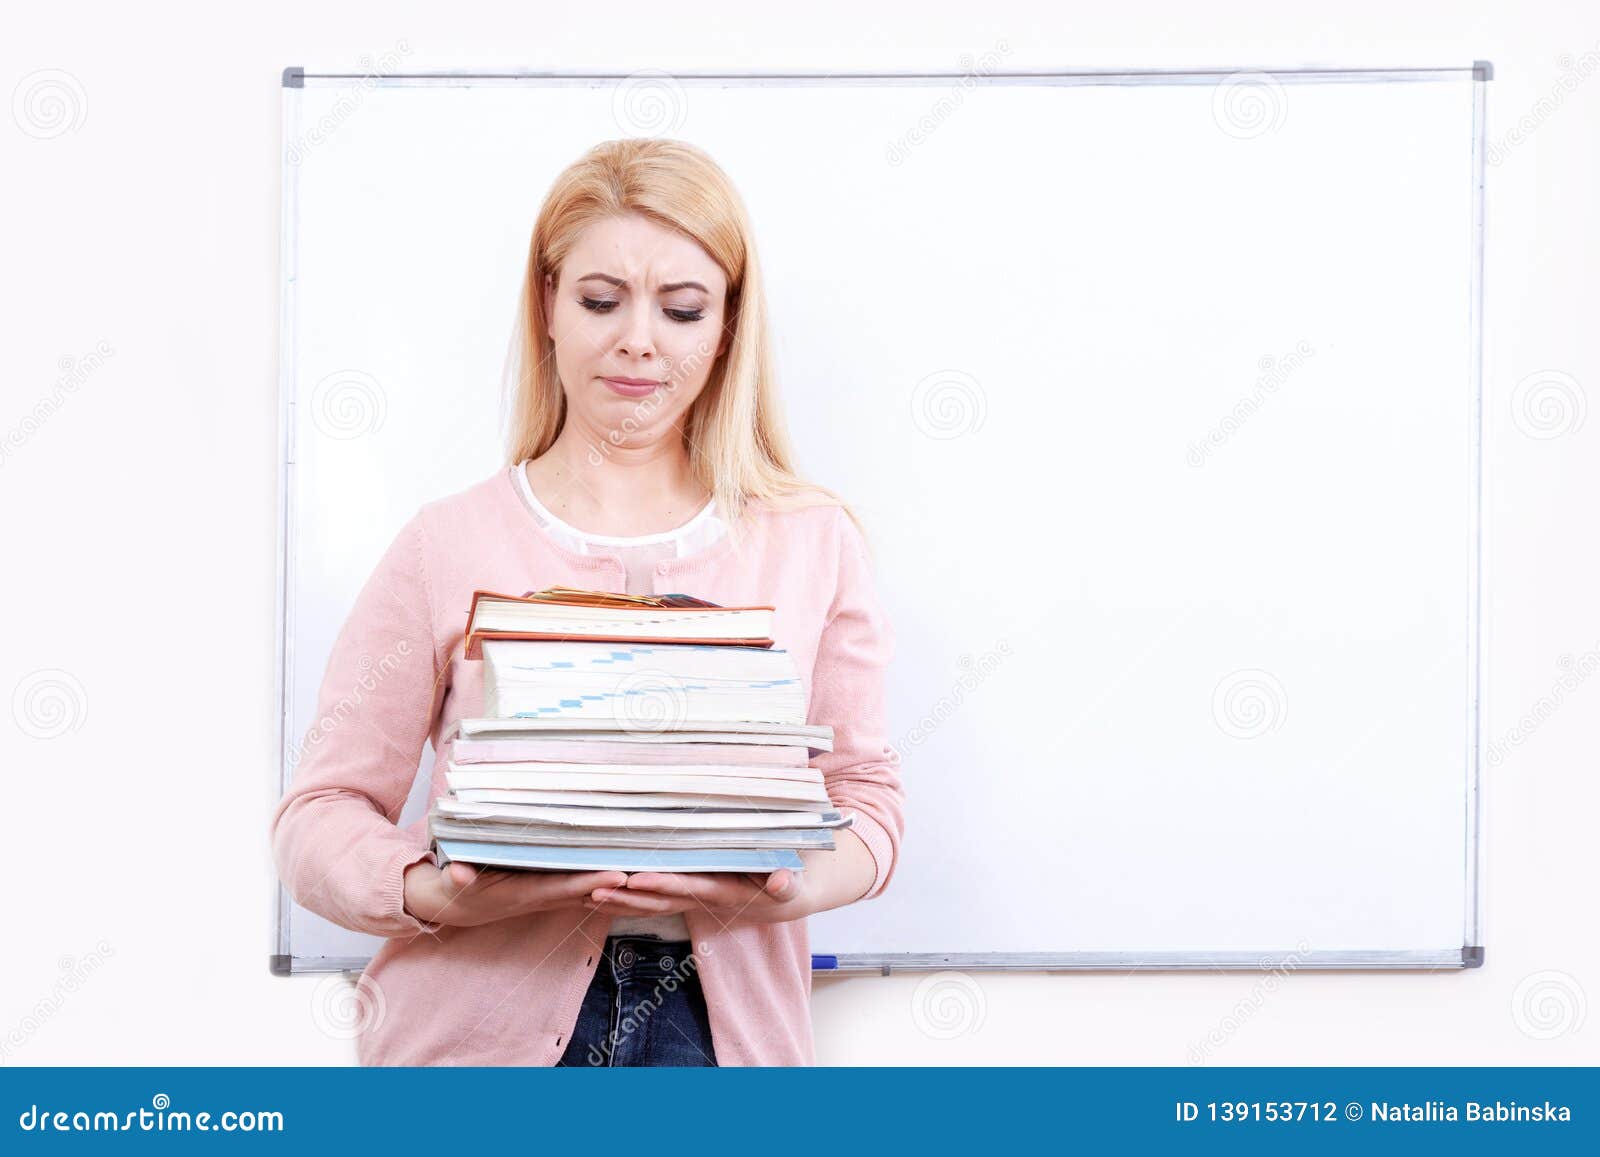 Портрет учителя с книгой. Учитель держит себя в руках. Учитель держит в руках книгу. Фото учителя с тетрадями за столом грустная. Читать рассказ училка